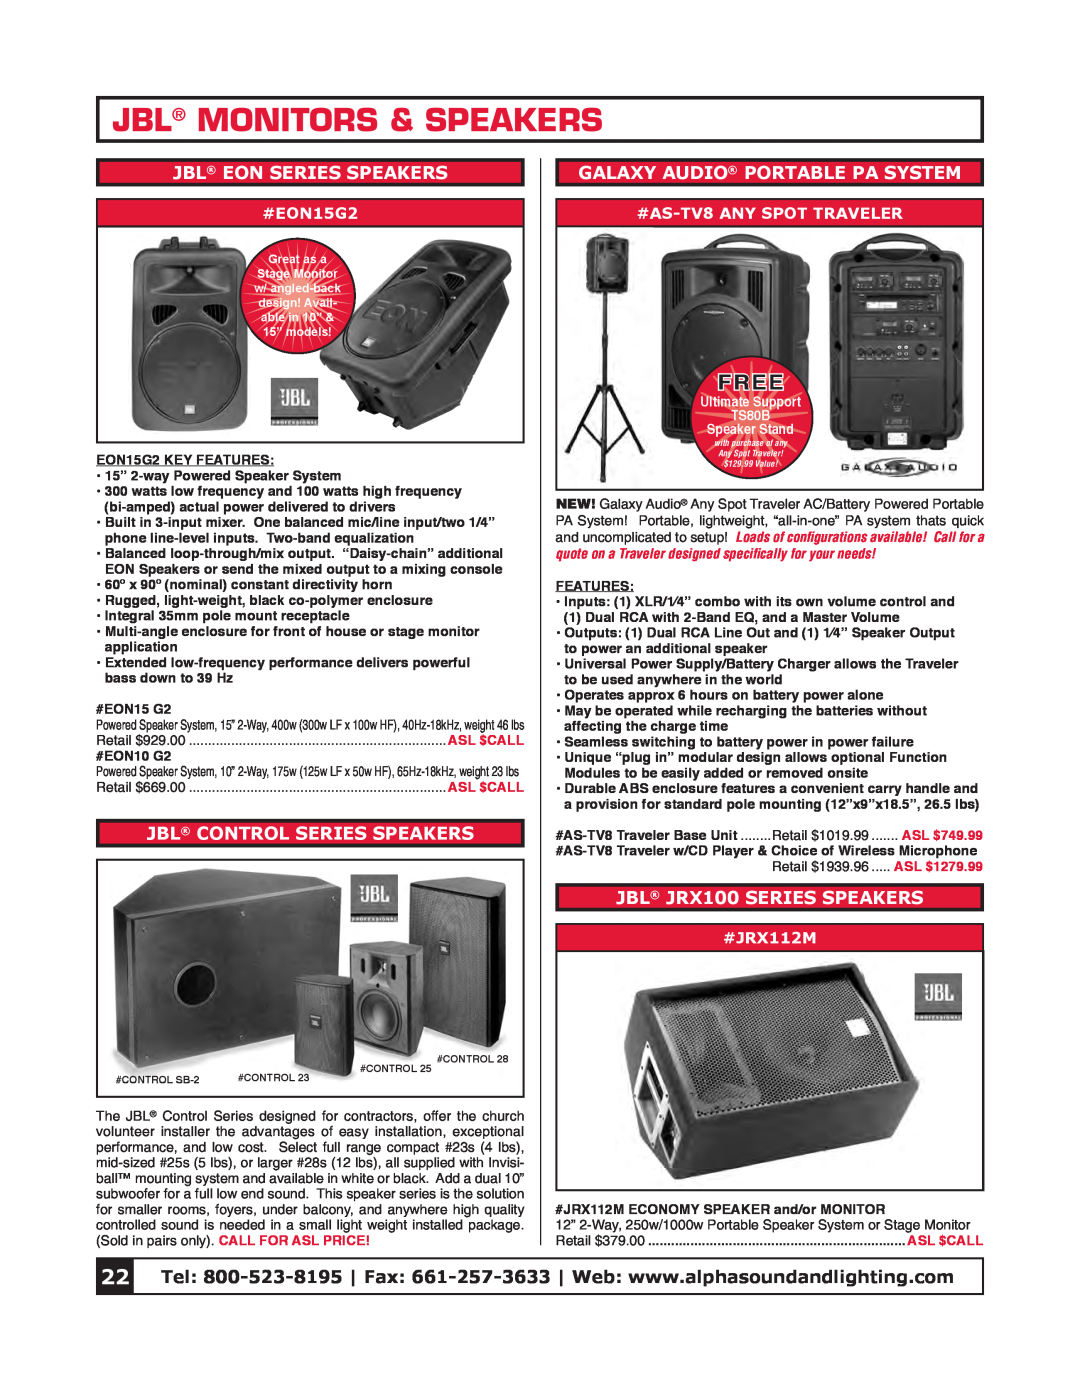 Tascam CD-P1260 Jbl Monitors & Speakers, Jbl Eon Series Speakers, Jbl Control Series Speakers, JBL JRX100 SERIES SPEAKERS 